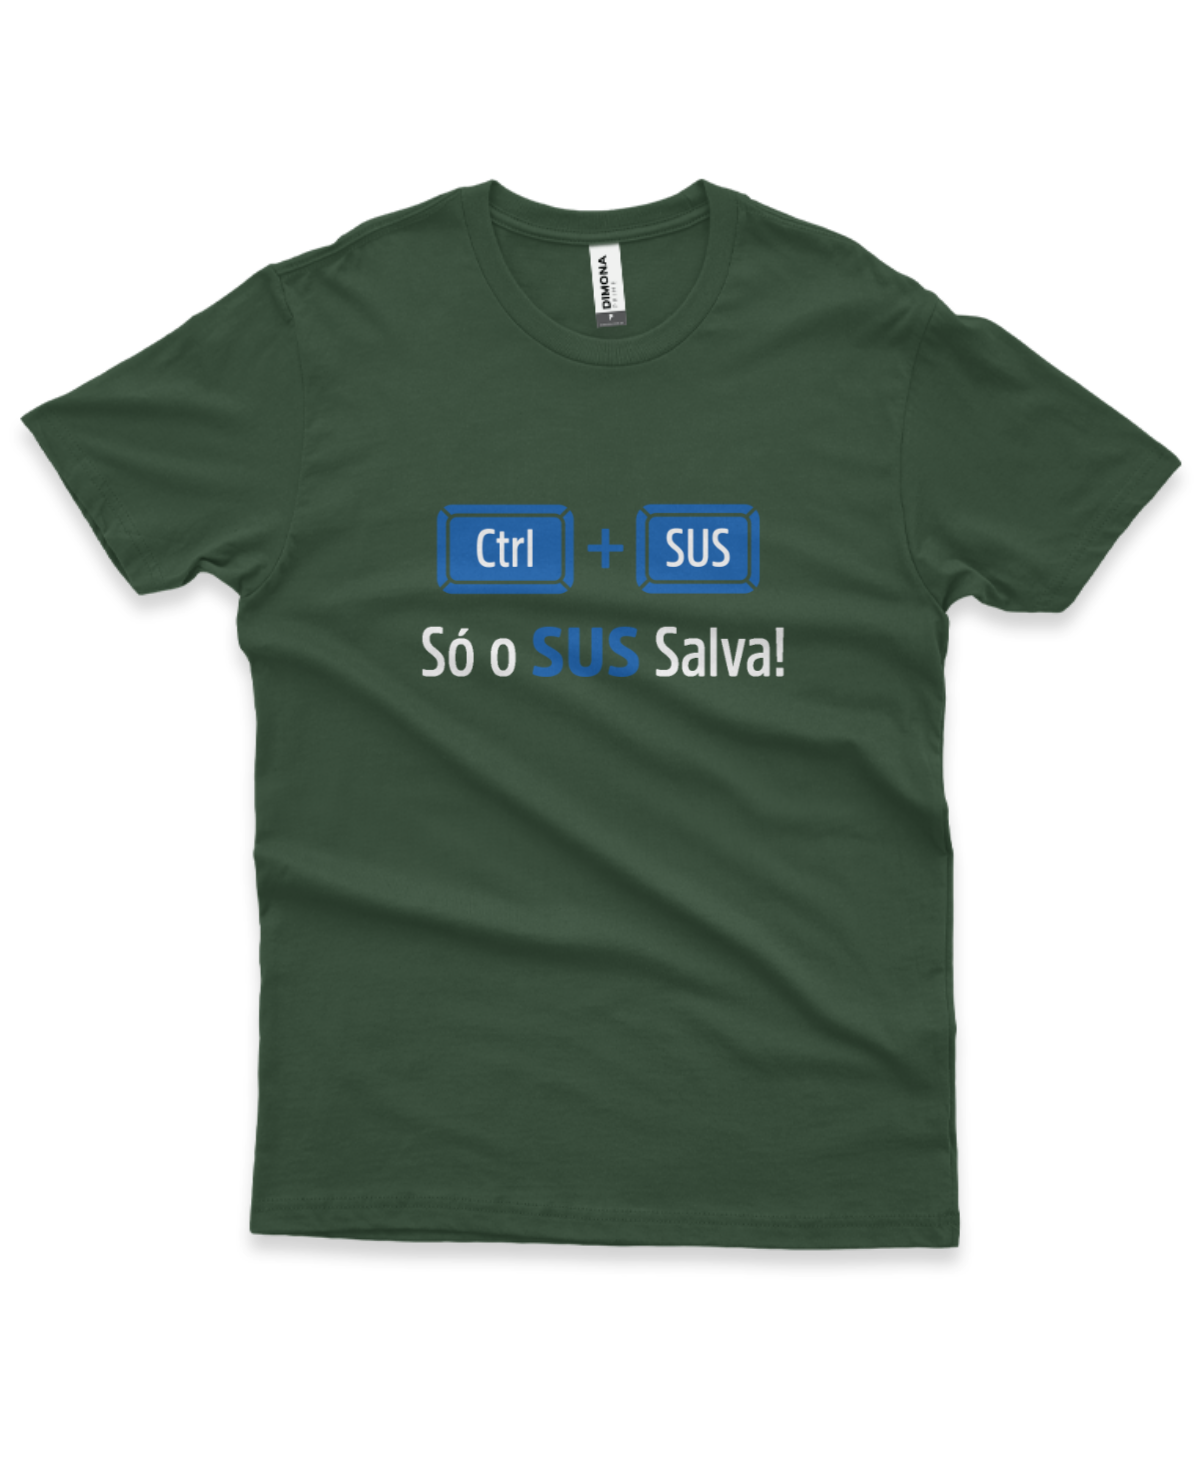 camiseta masculina cor verde musgo com a estampa ilustração CONTROL + SUS e a frase só o sus salva